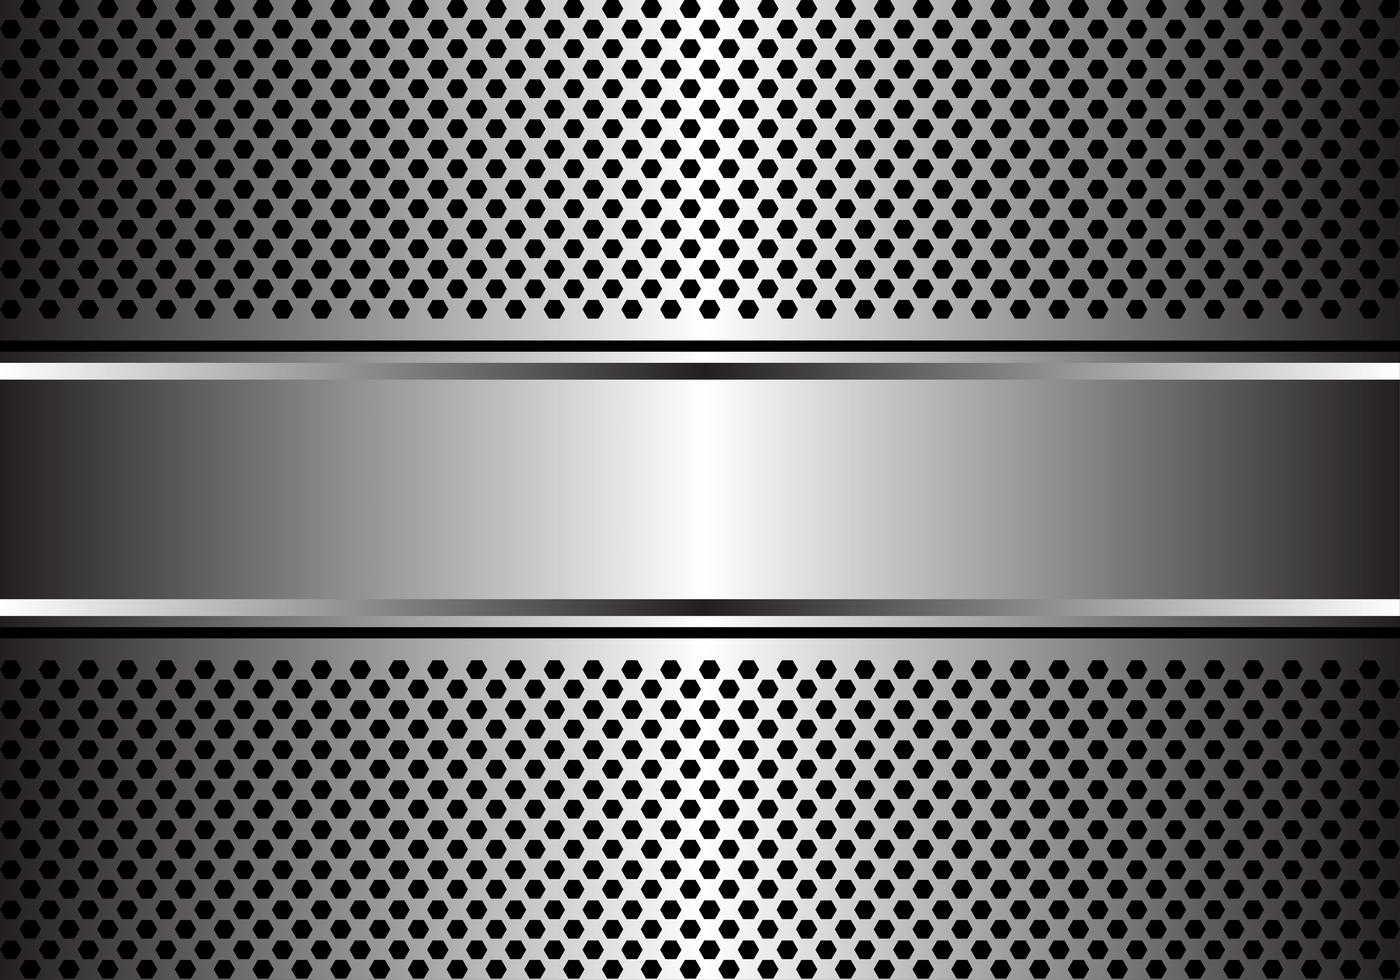 Bandera de plata abstracta en el ejemplo moderno de lujo del vector del fondo del diseño de la malla del hexágono.